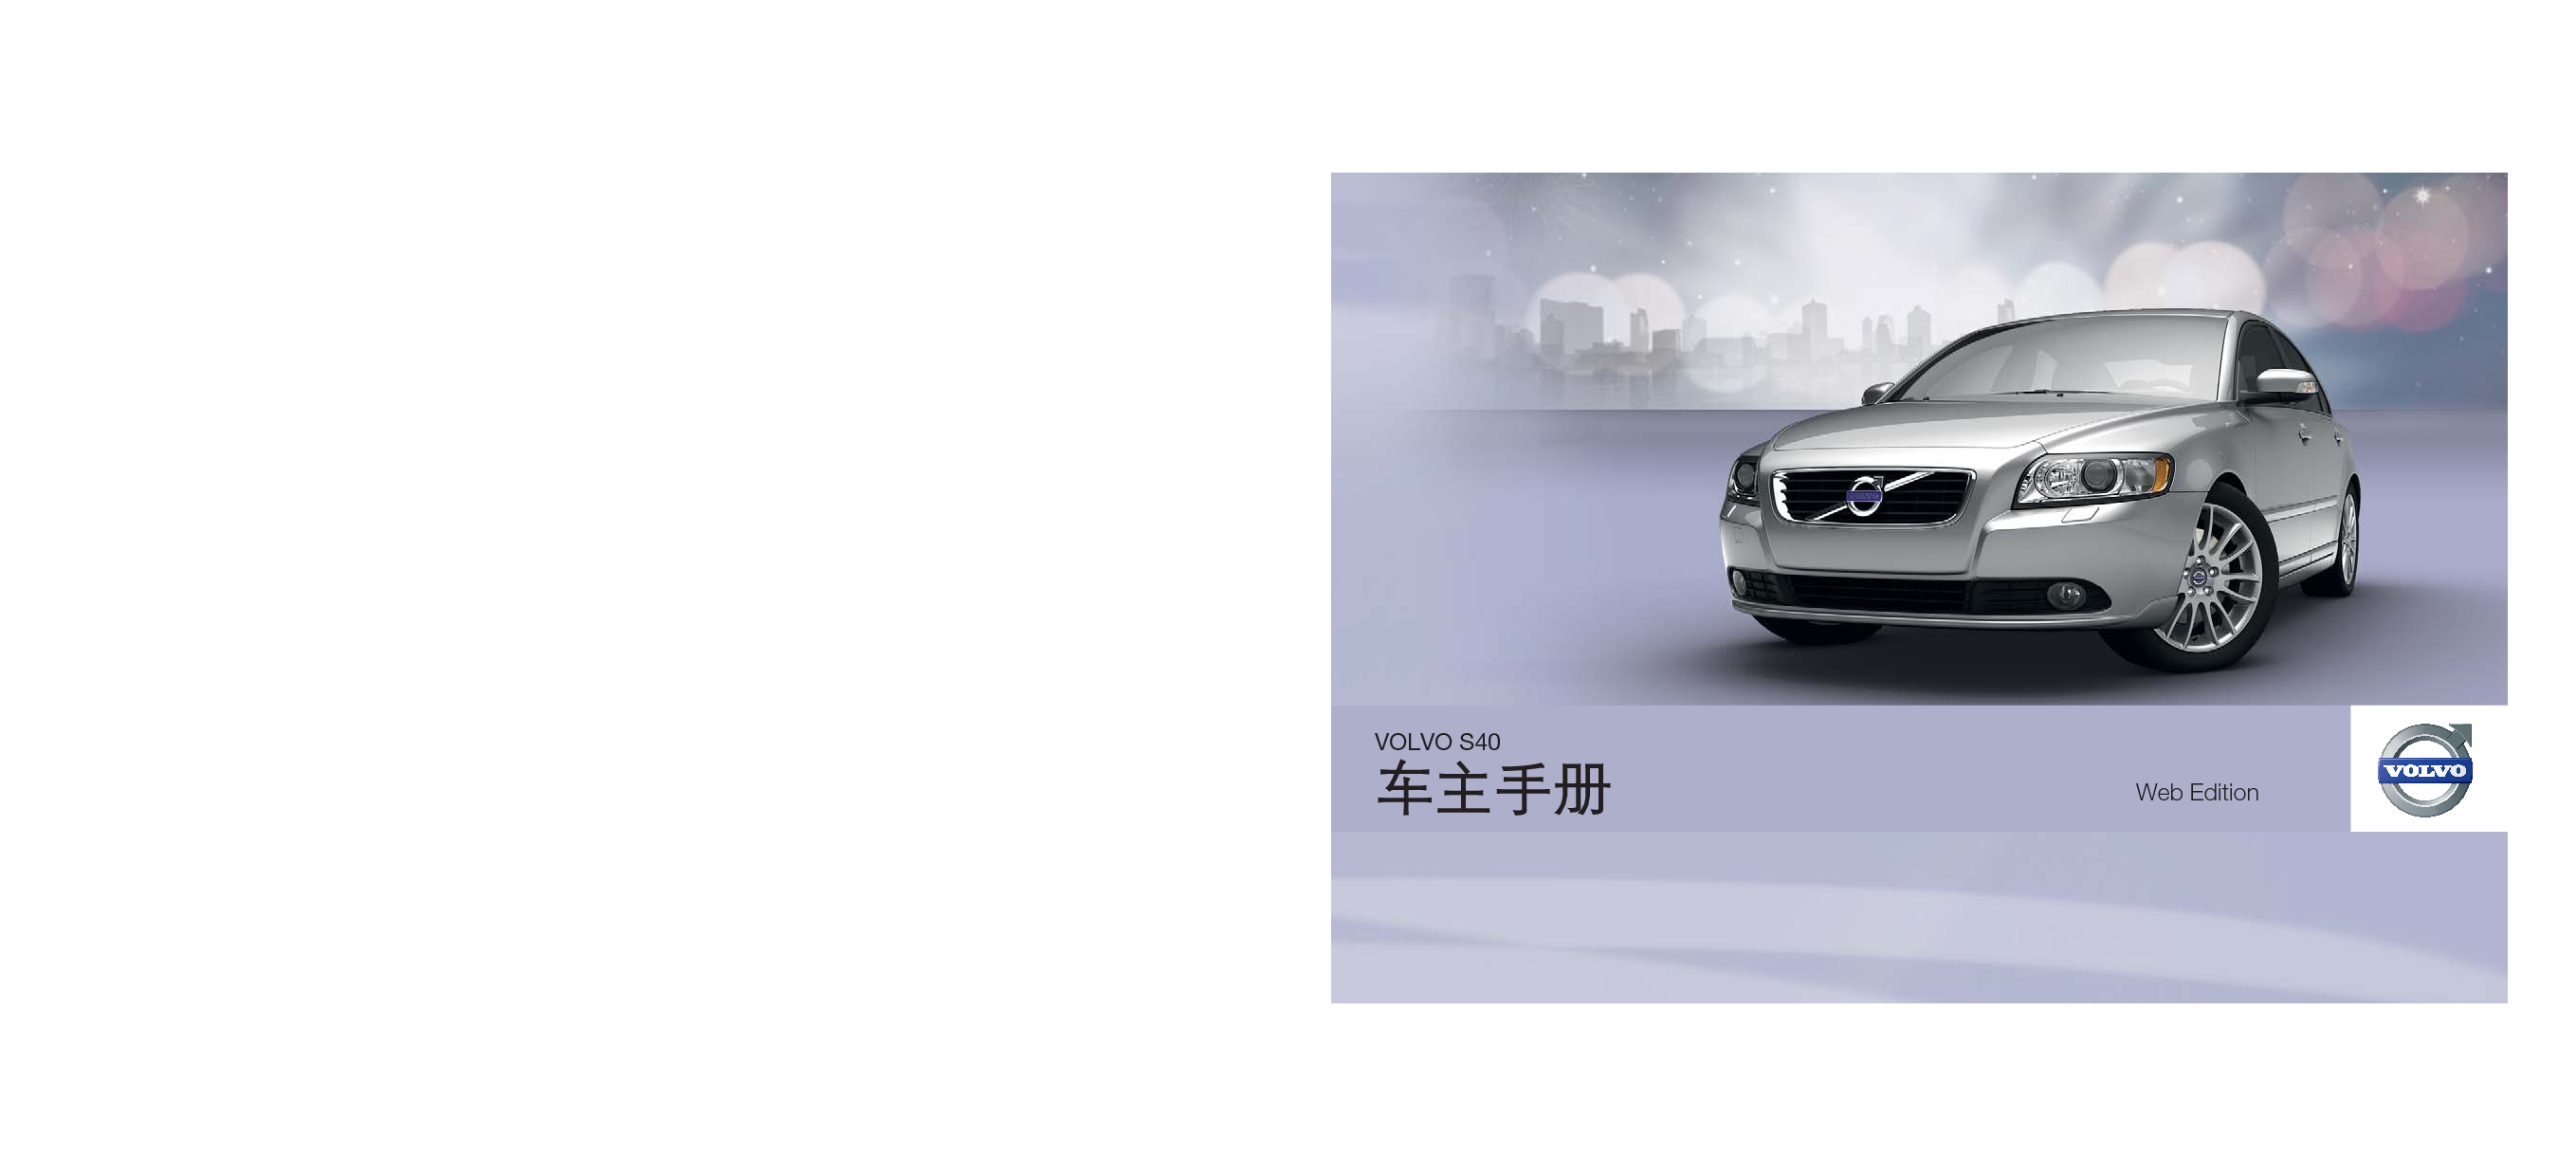 沃尔沃 Volvo S40 2012 用户手册 封面